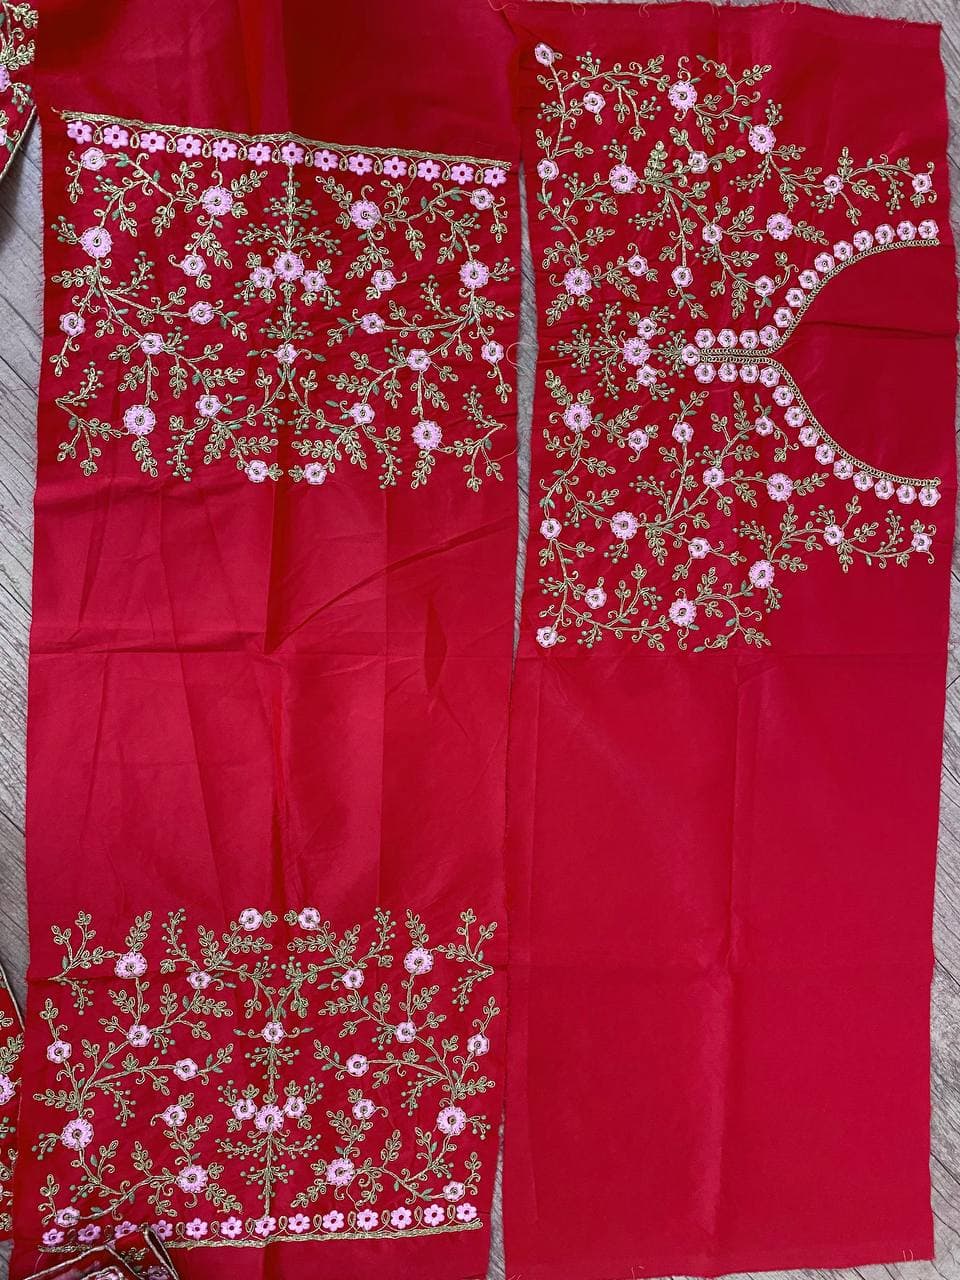 Red Lehenga Choli In Malai Satin Silk With Multi Embroidery Work